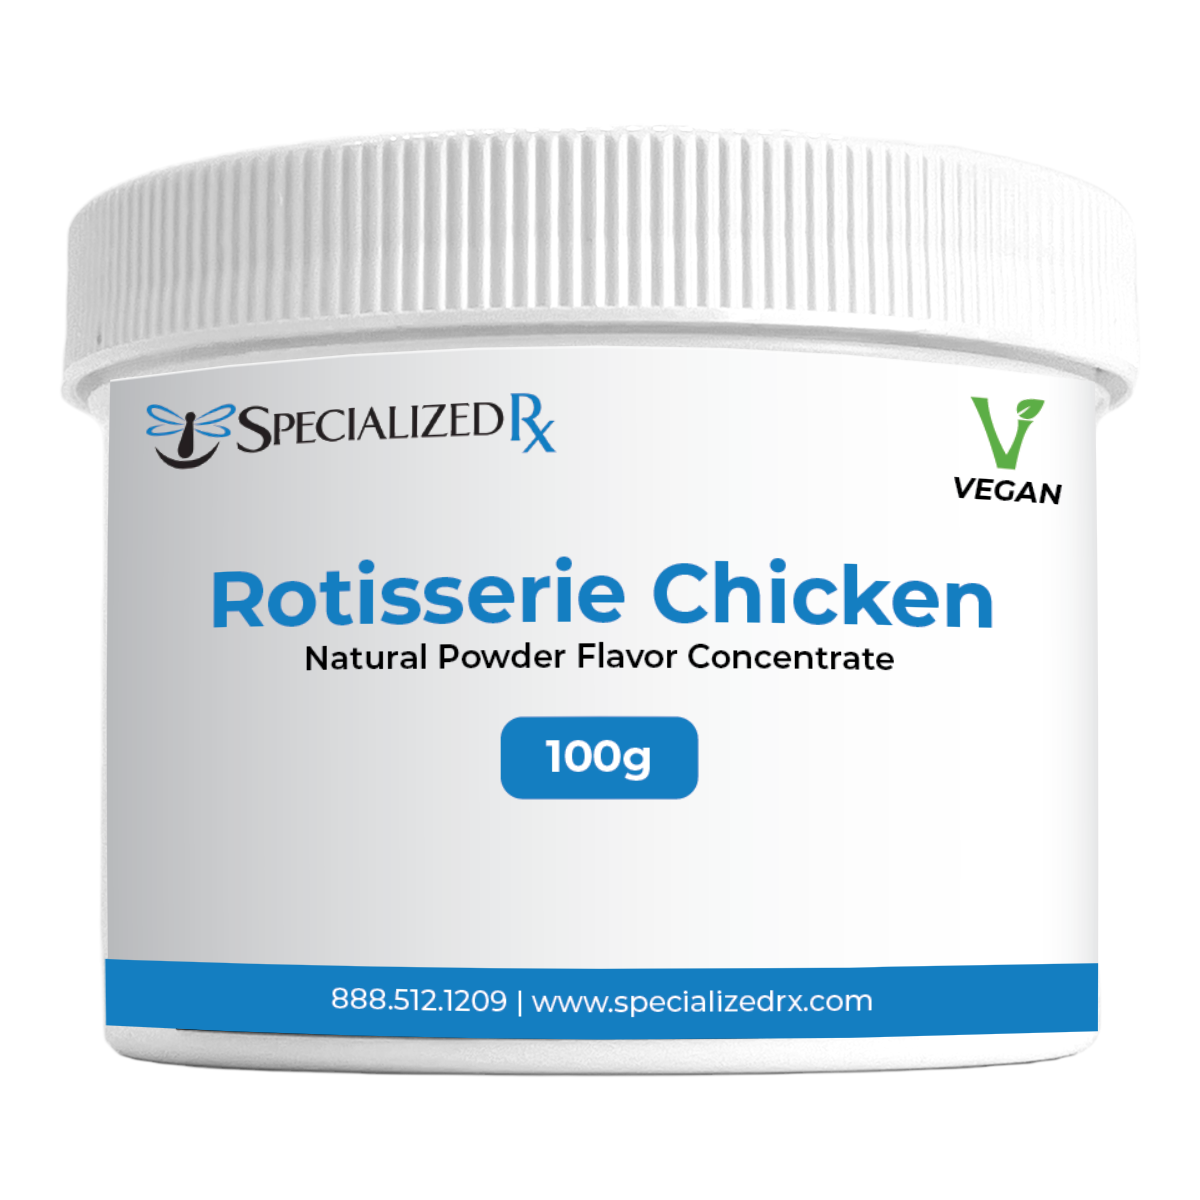 Rotisserie Chicken Natural Powder Flavor Concentrate - Vegan